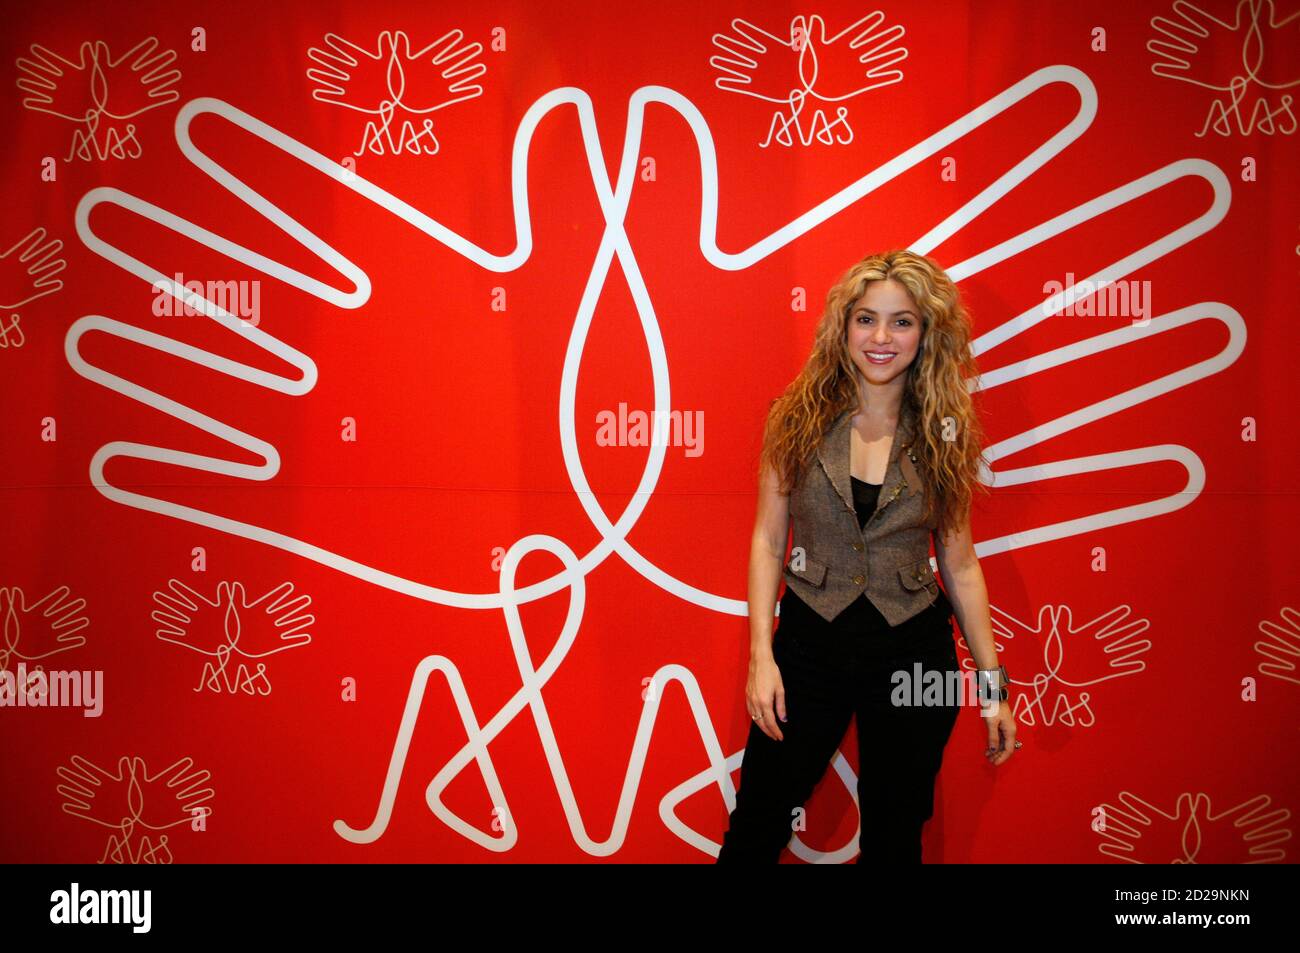 Die kolumbianische Sängerin Shakira posiert nach einem Interview, um "ALAS: El Concierto Por Los Ninos" (das Konzert für die Kinder) im Banamex Center in Mexiko-Stadt zu promoten 15. Mai 2008. Das Konzert findet zeitgleich am 17. Mai in Mexiko und Argentinien statt. REUTERS/Tomas Bravo (MEXIKO) Stockfoto